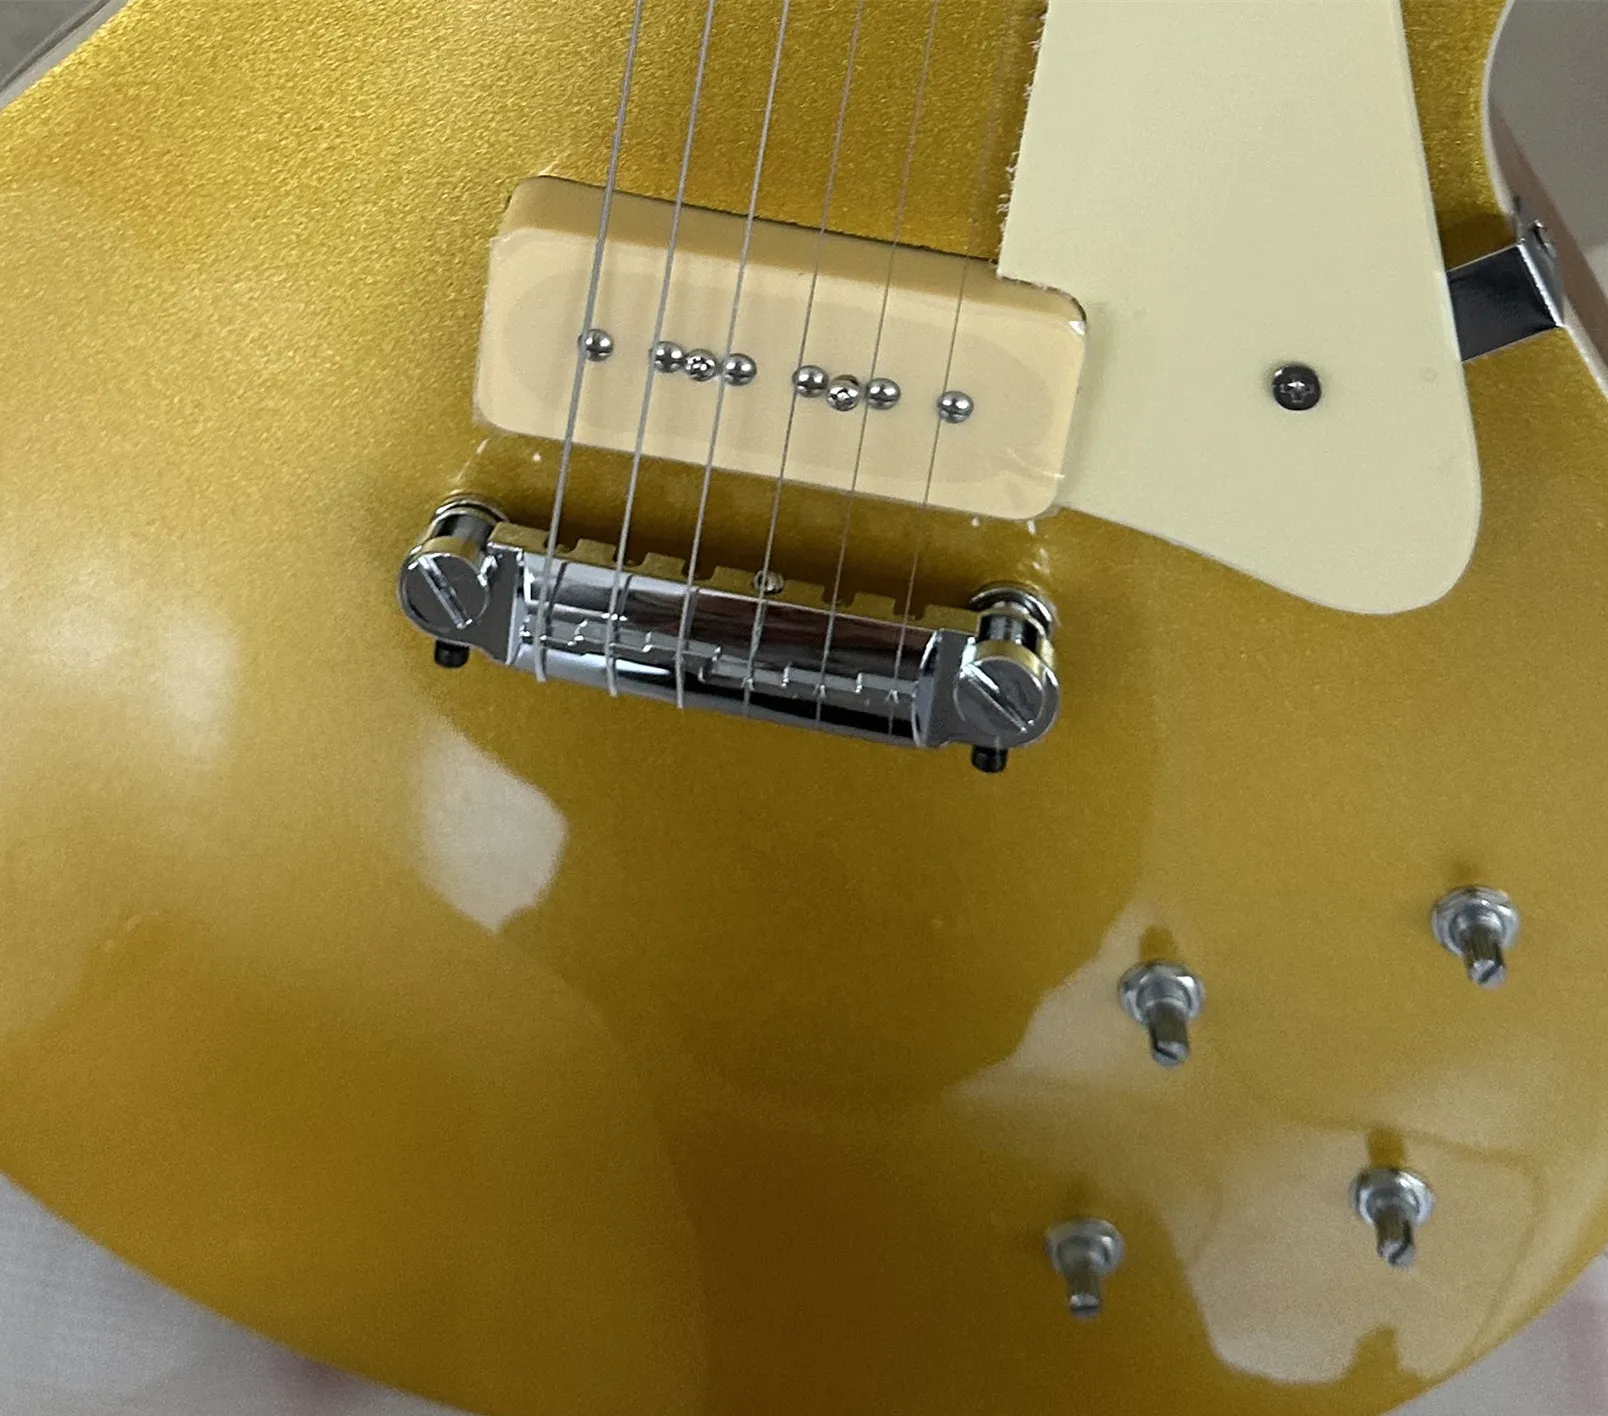 Guitarra eléctrica estándar, dorada, pastilla p90, protector de firma, en stock, paquete relámpago